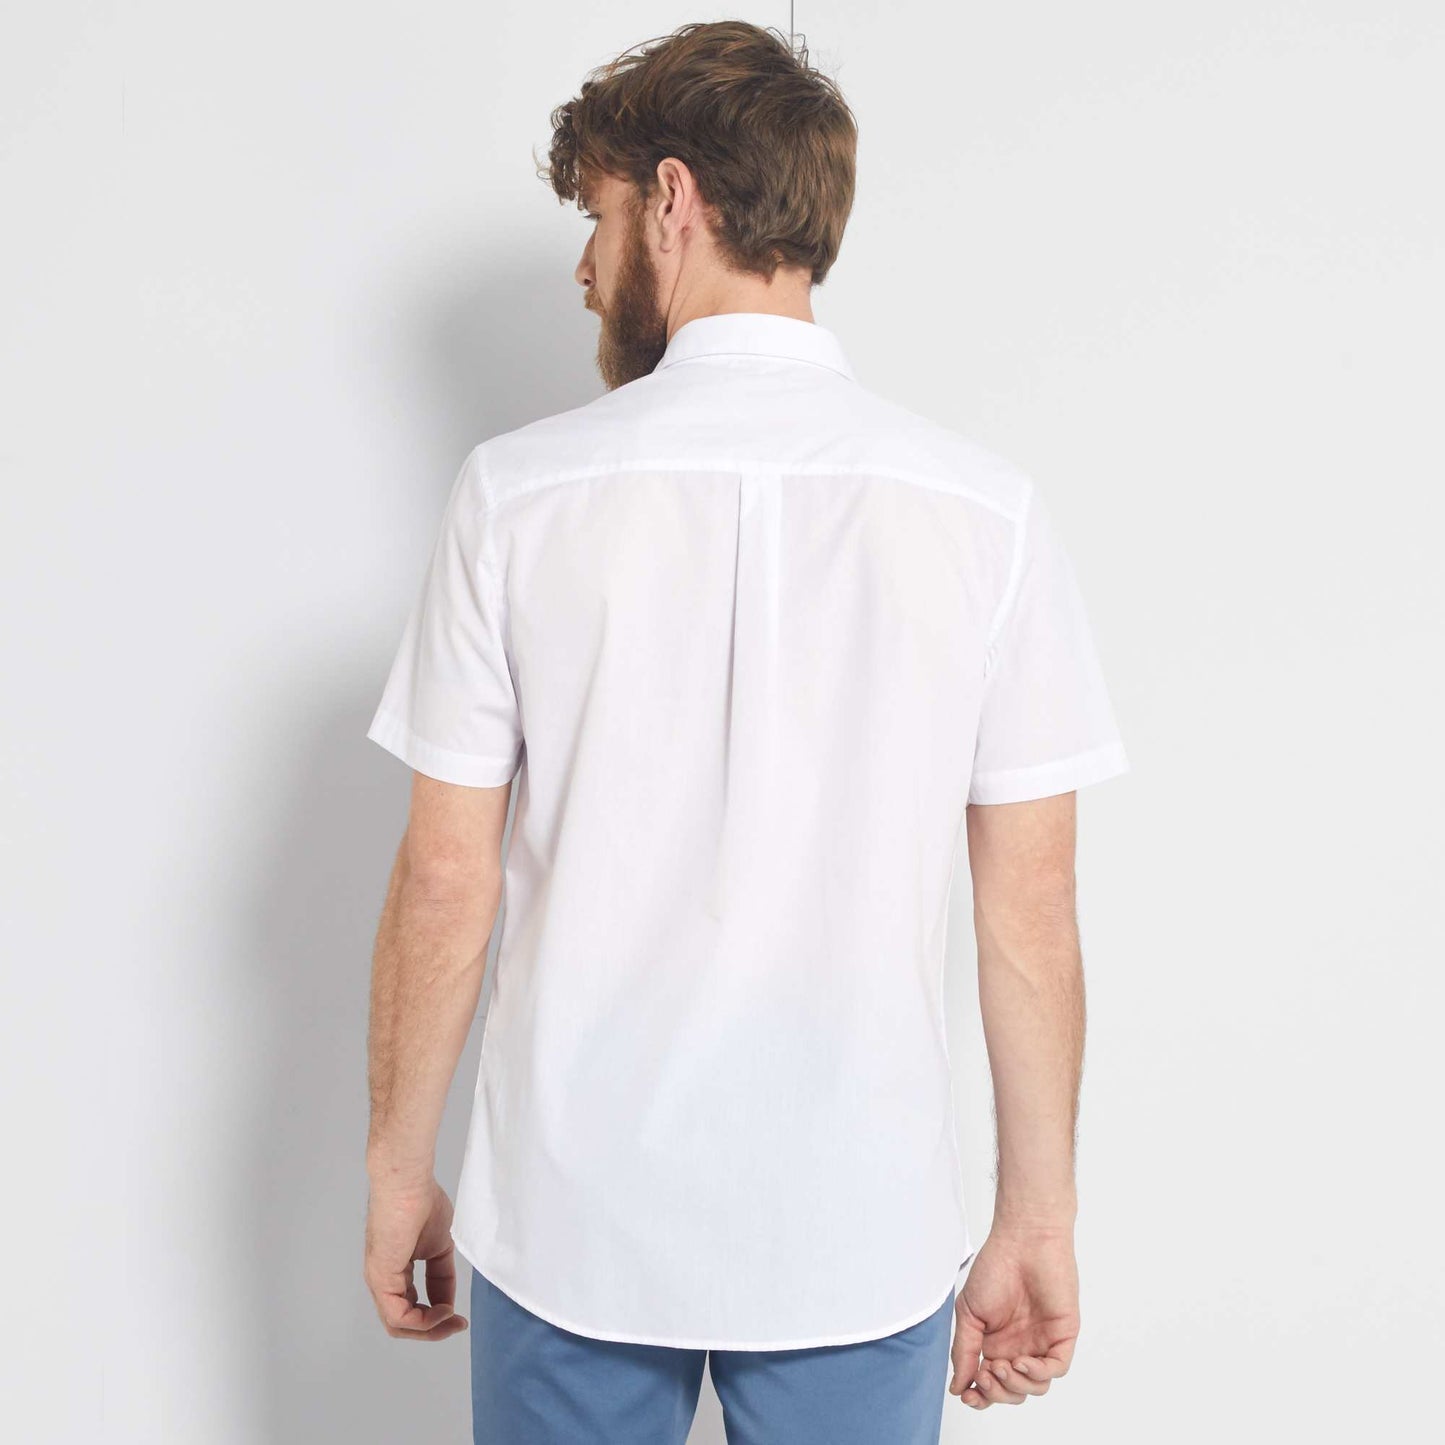 White short-sleeved shirt white